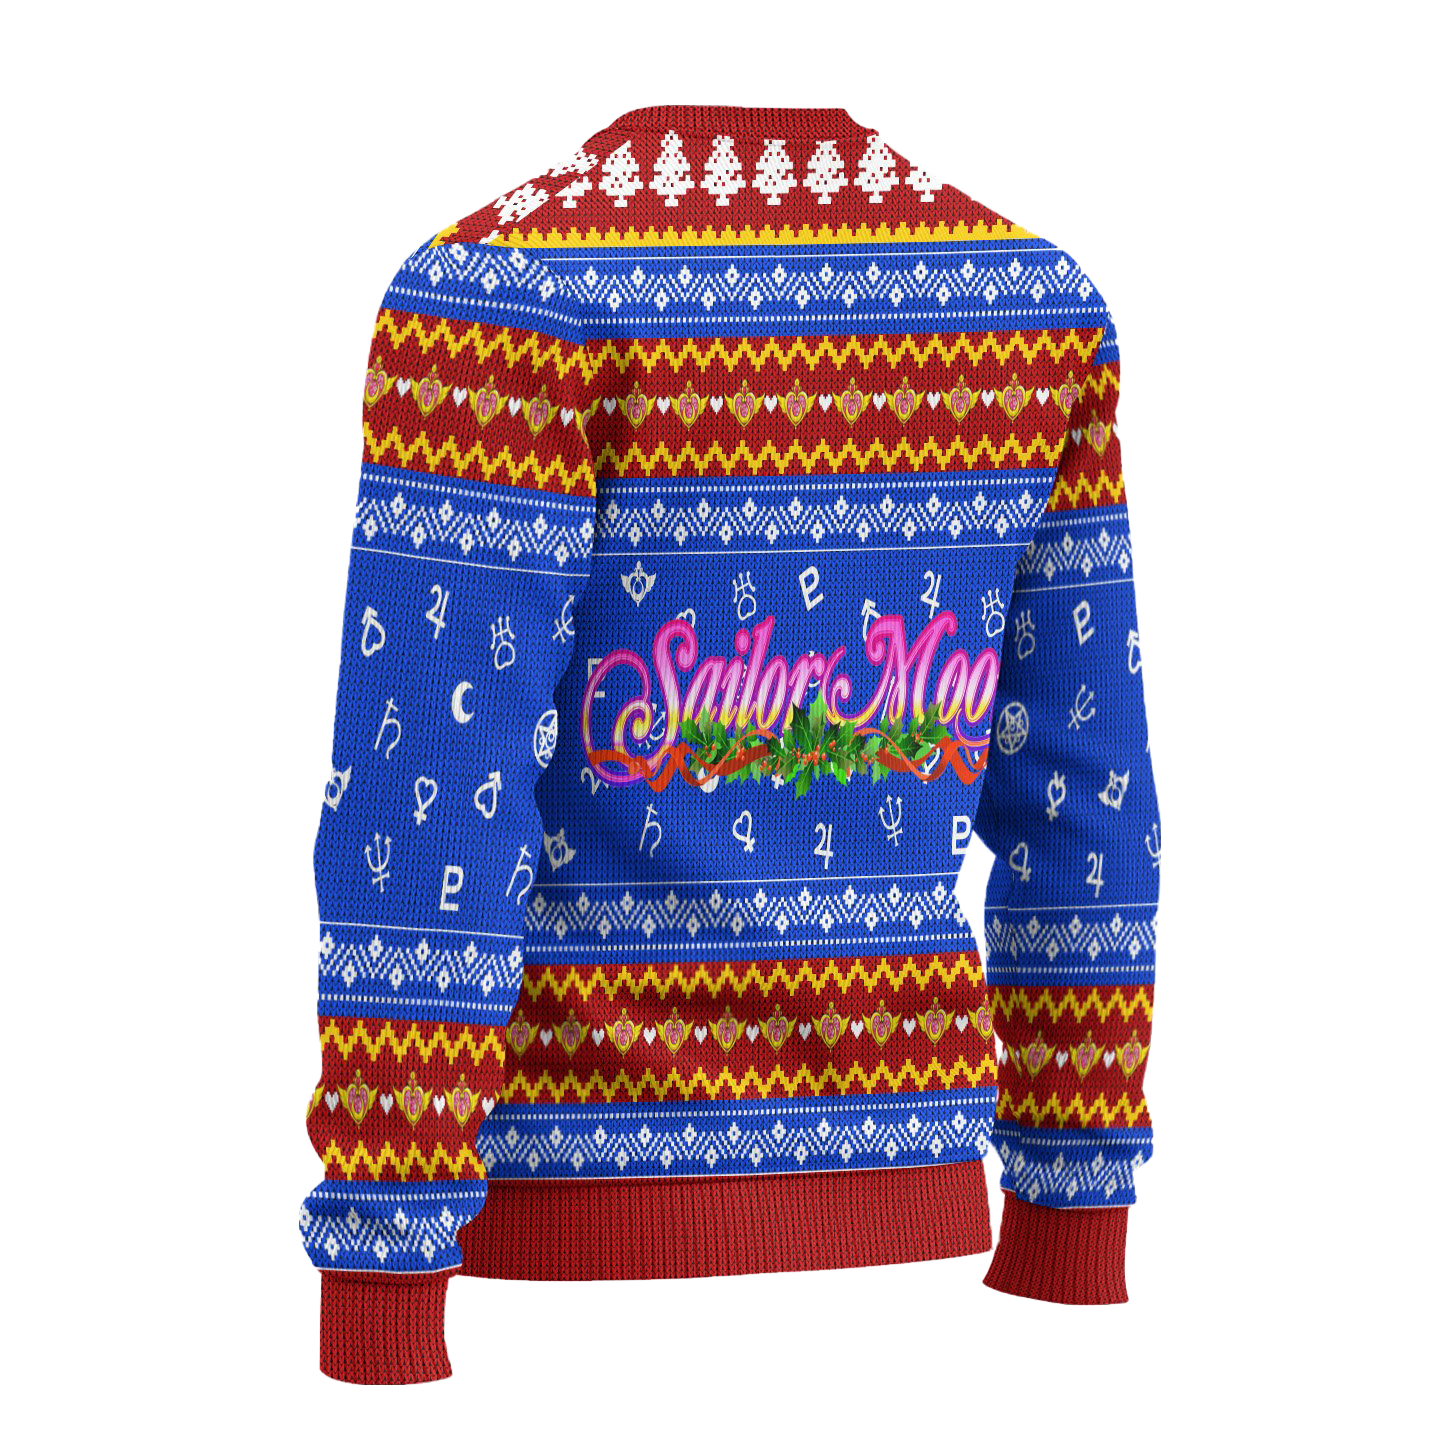 Sailor Moon Ugly Christmas Sweater Anime Xmas Gift